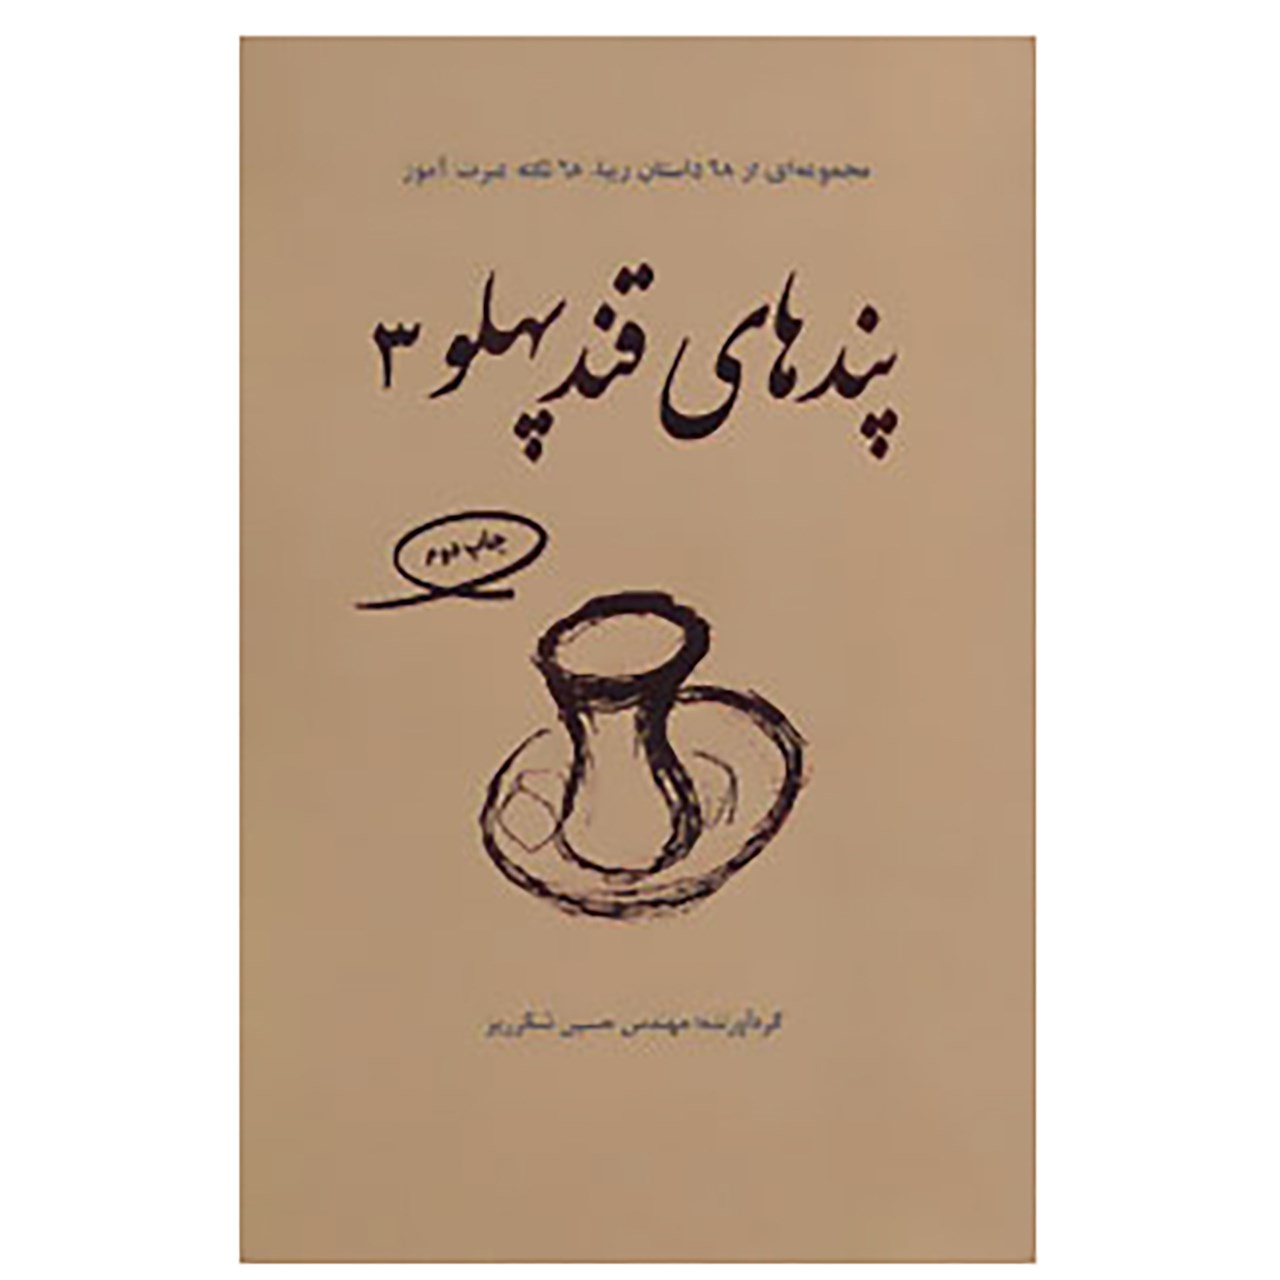 کتاب پندهای قندپهلو 3 اثر حسین شکرریز